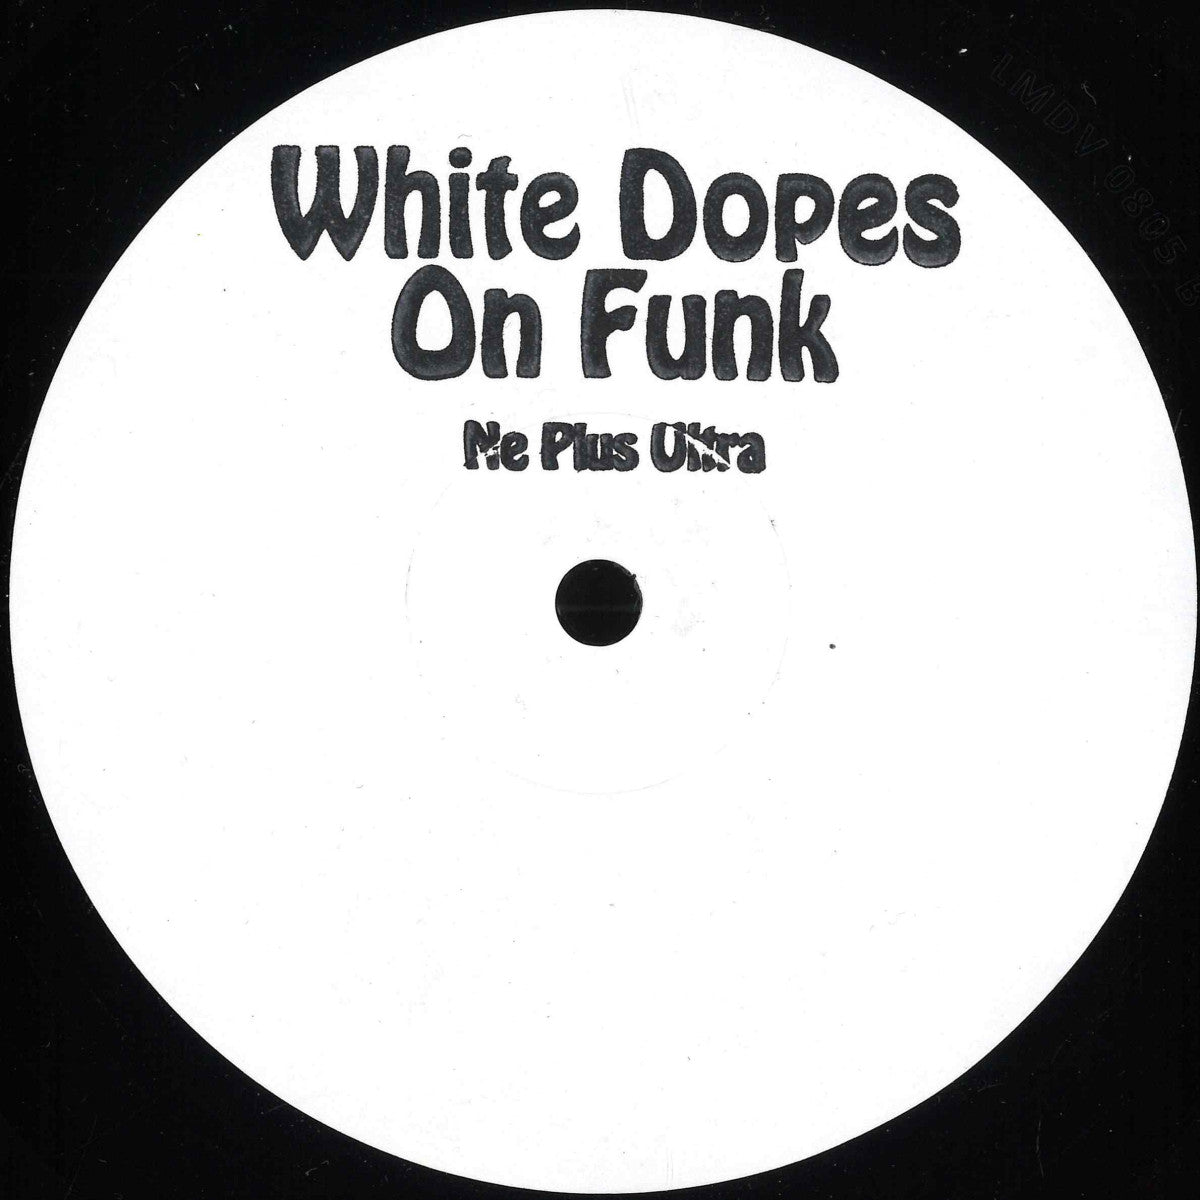 White Dopes On Funk - Ne Plus Ultra EP (D.A.M.N.) (M)